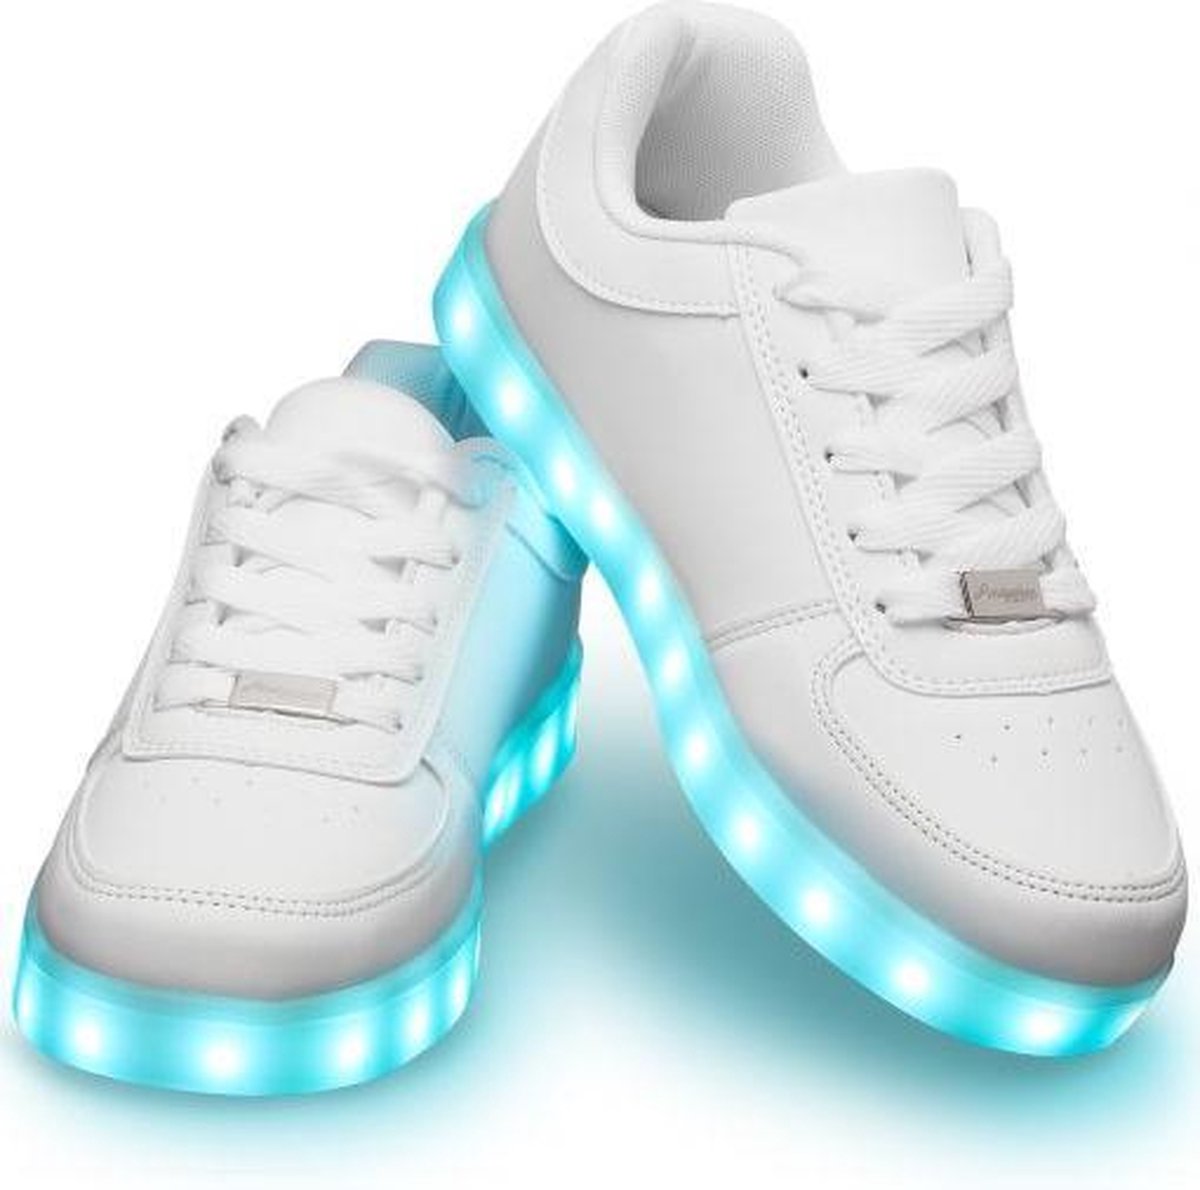 Schoenen met lichtjes - Lichtgevende led schoenen - Wit - Maat 40